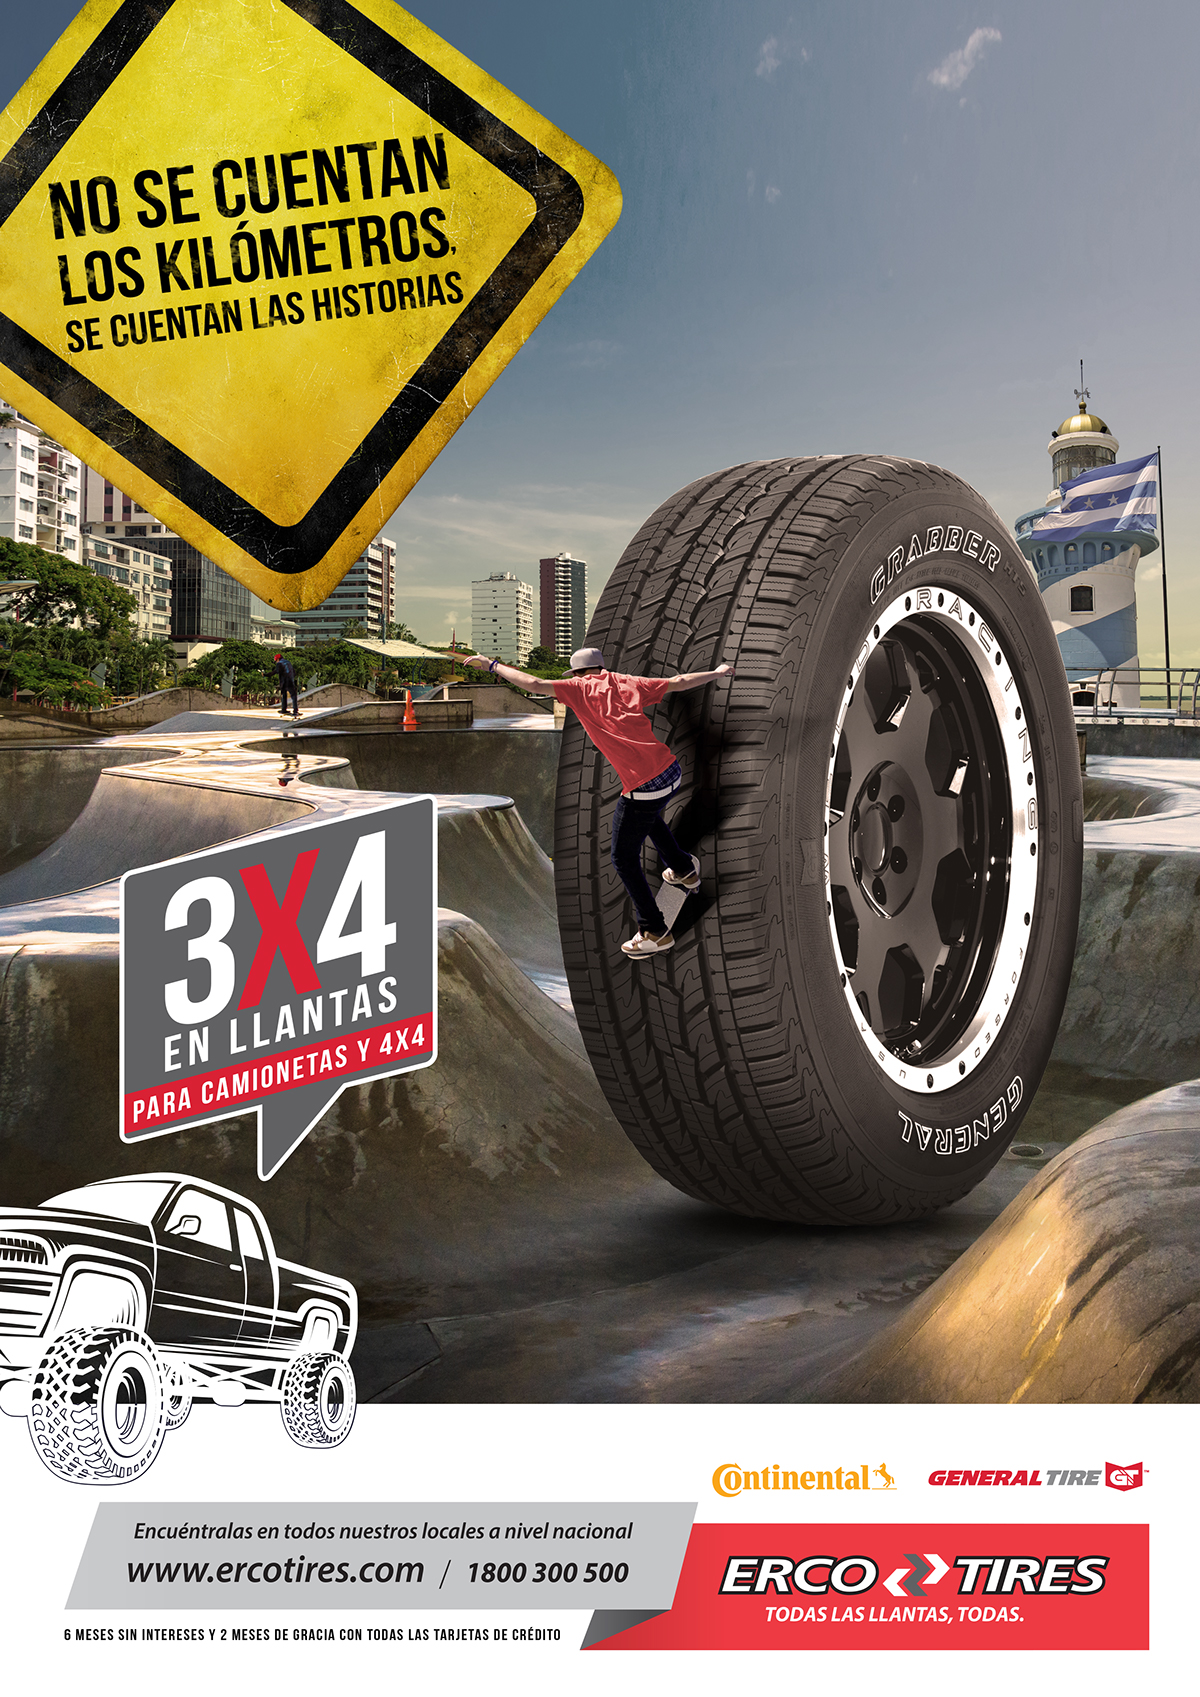 proyecto para llantas promocion para camionetas project promotion tires for trucks